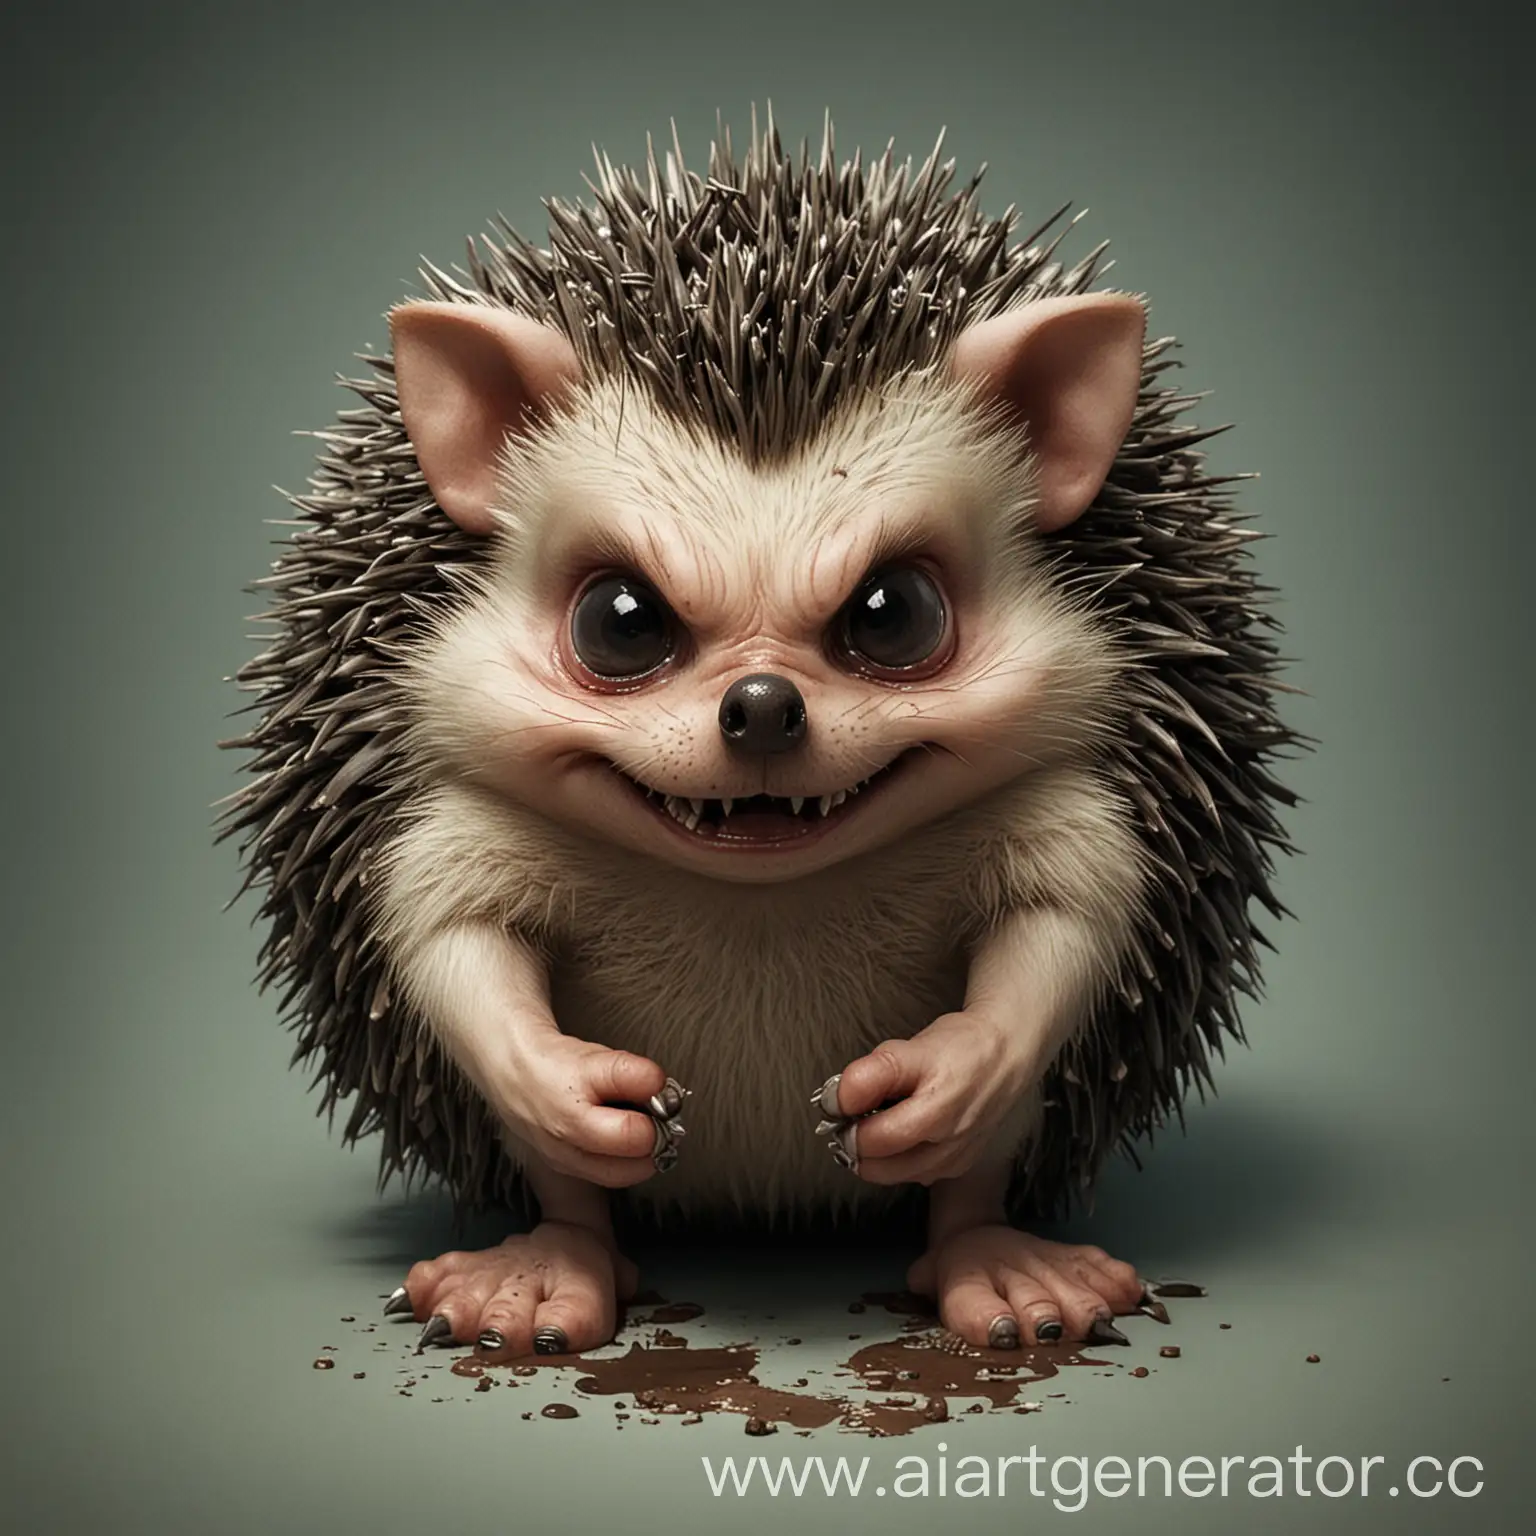 Malevolent-Hedgehog-with-Sinister-Expression